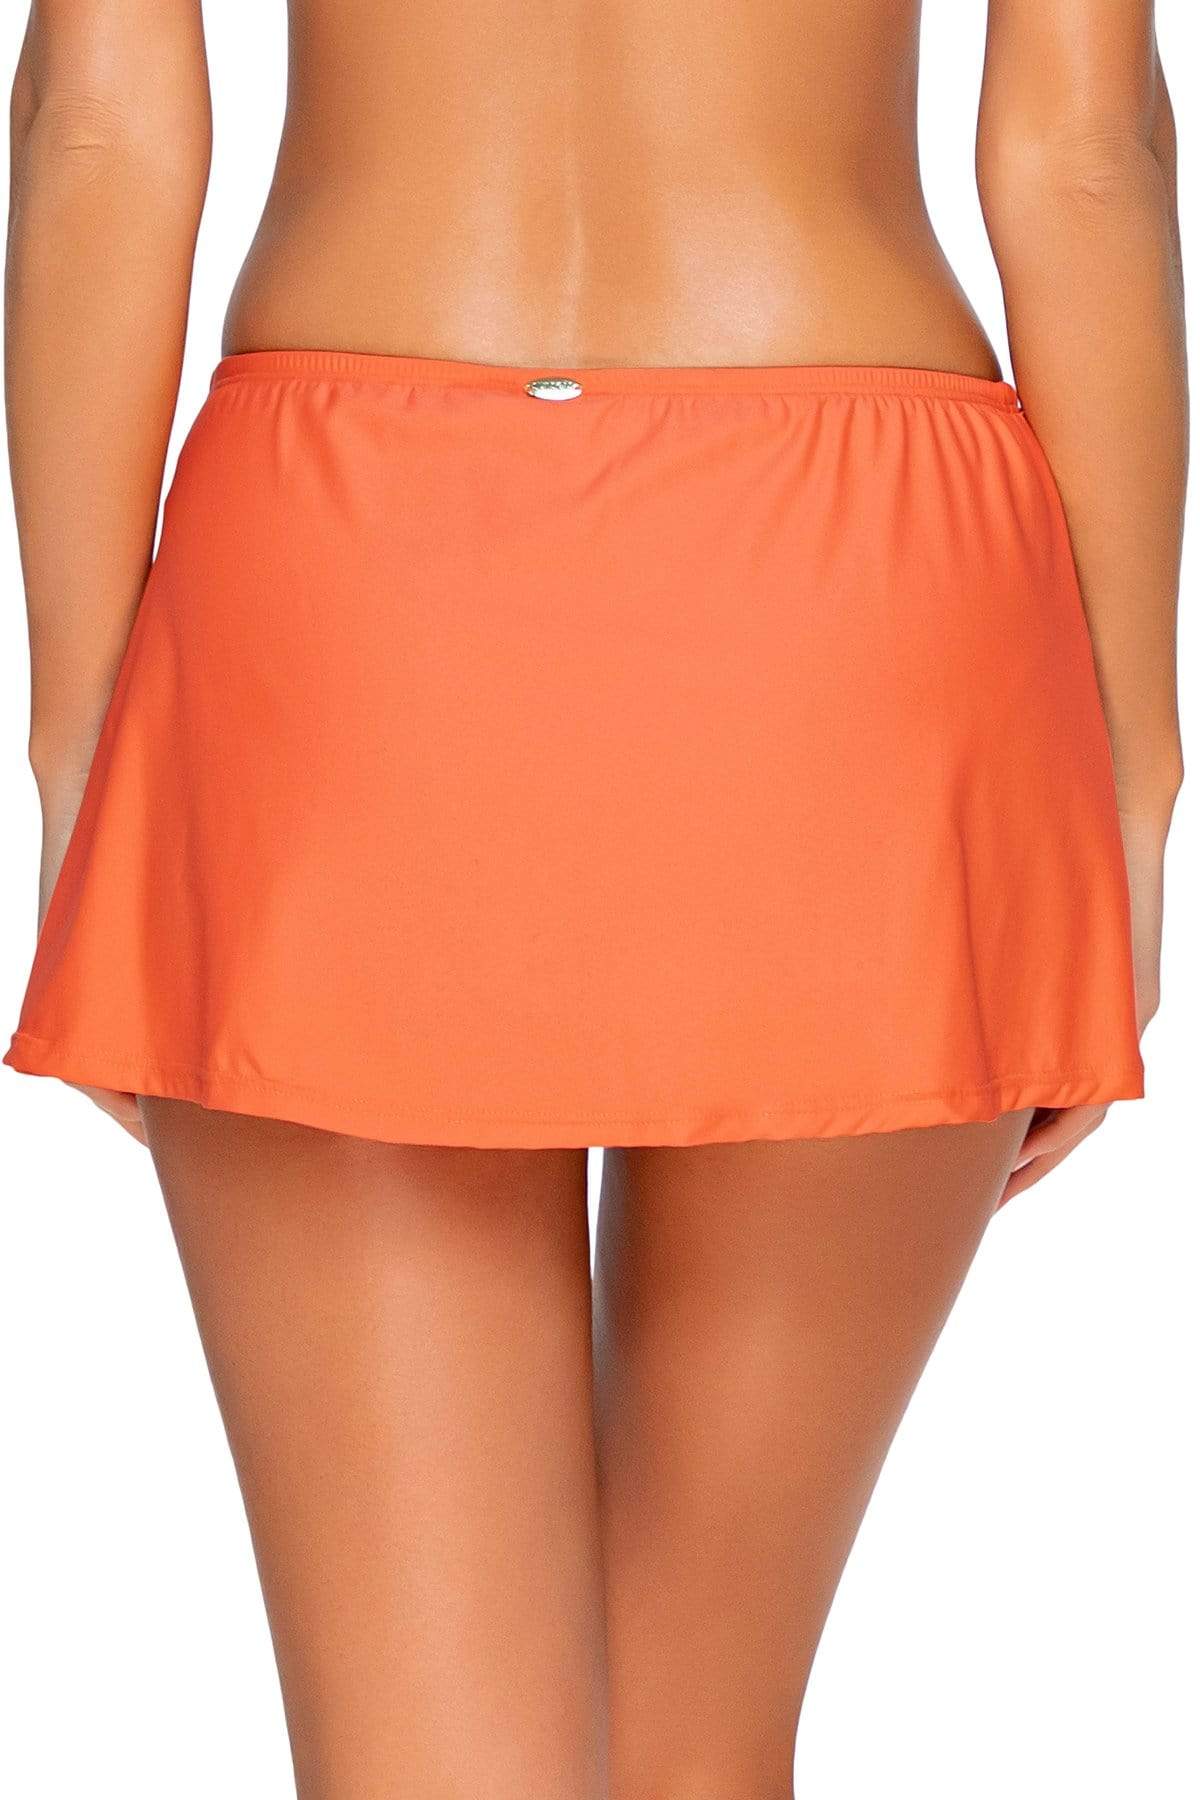 Bestswimwear -  Sunsets Tropical Coral Kokomo Swim Skirt